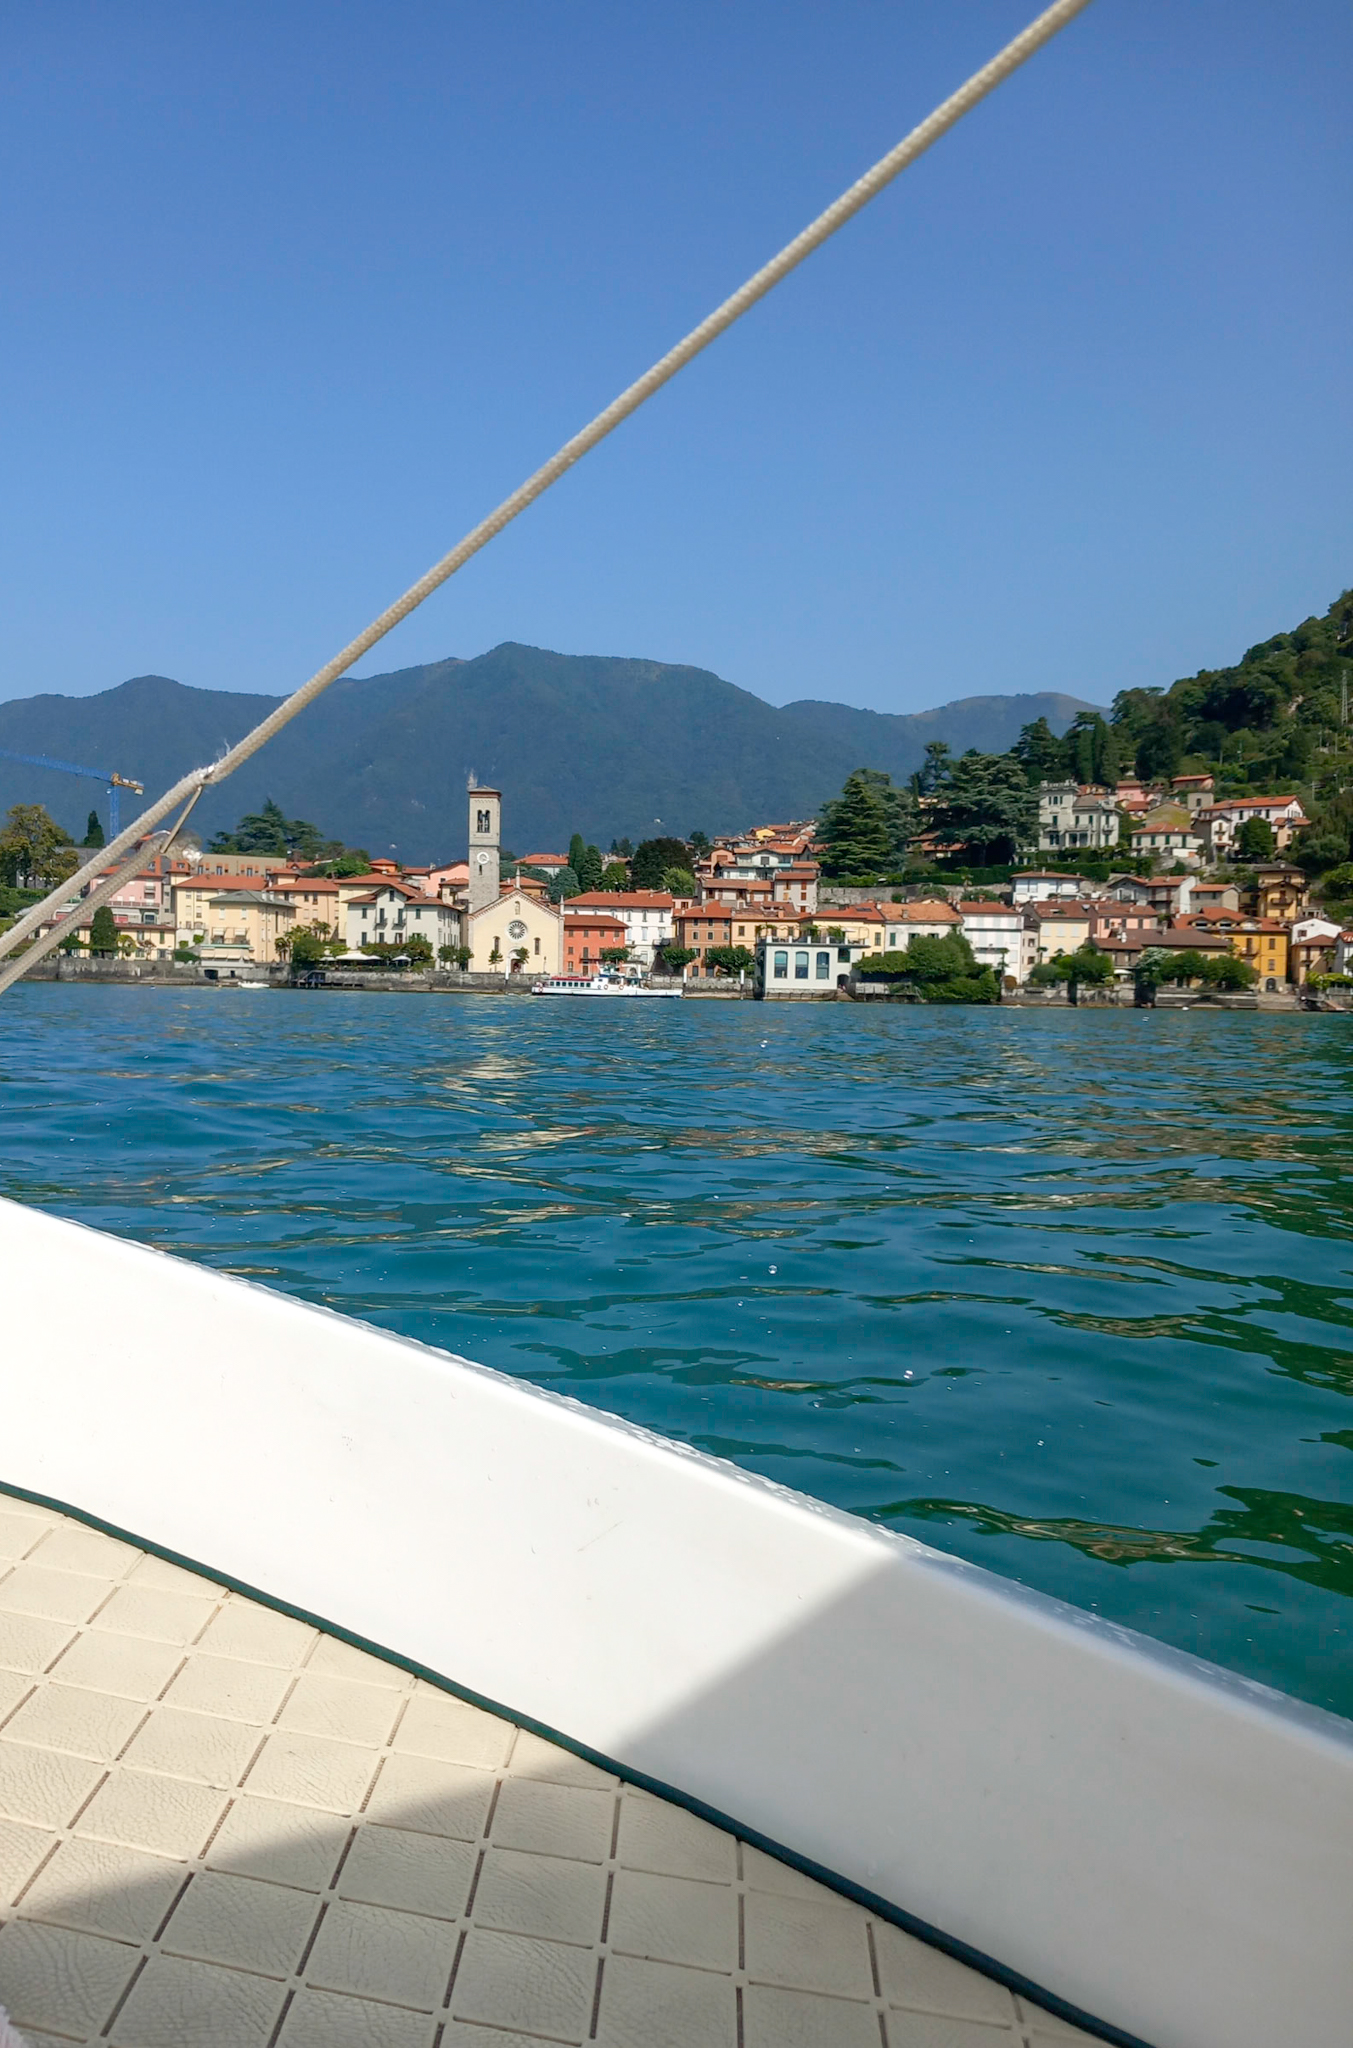 Renting a private boat in Como